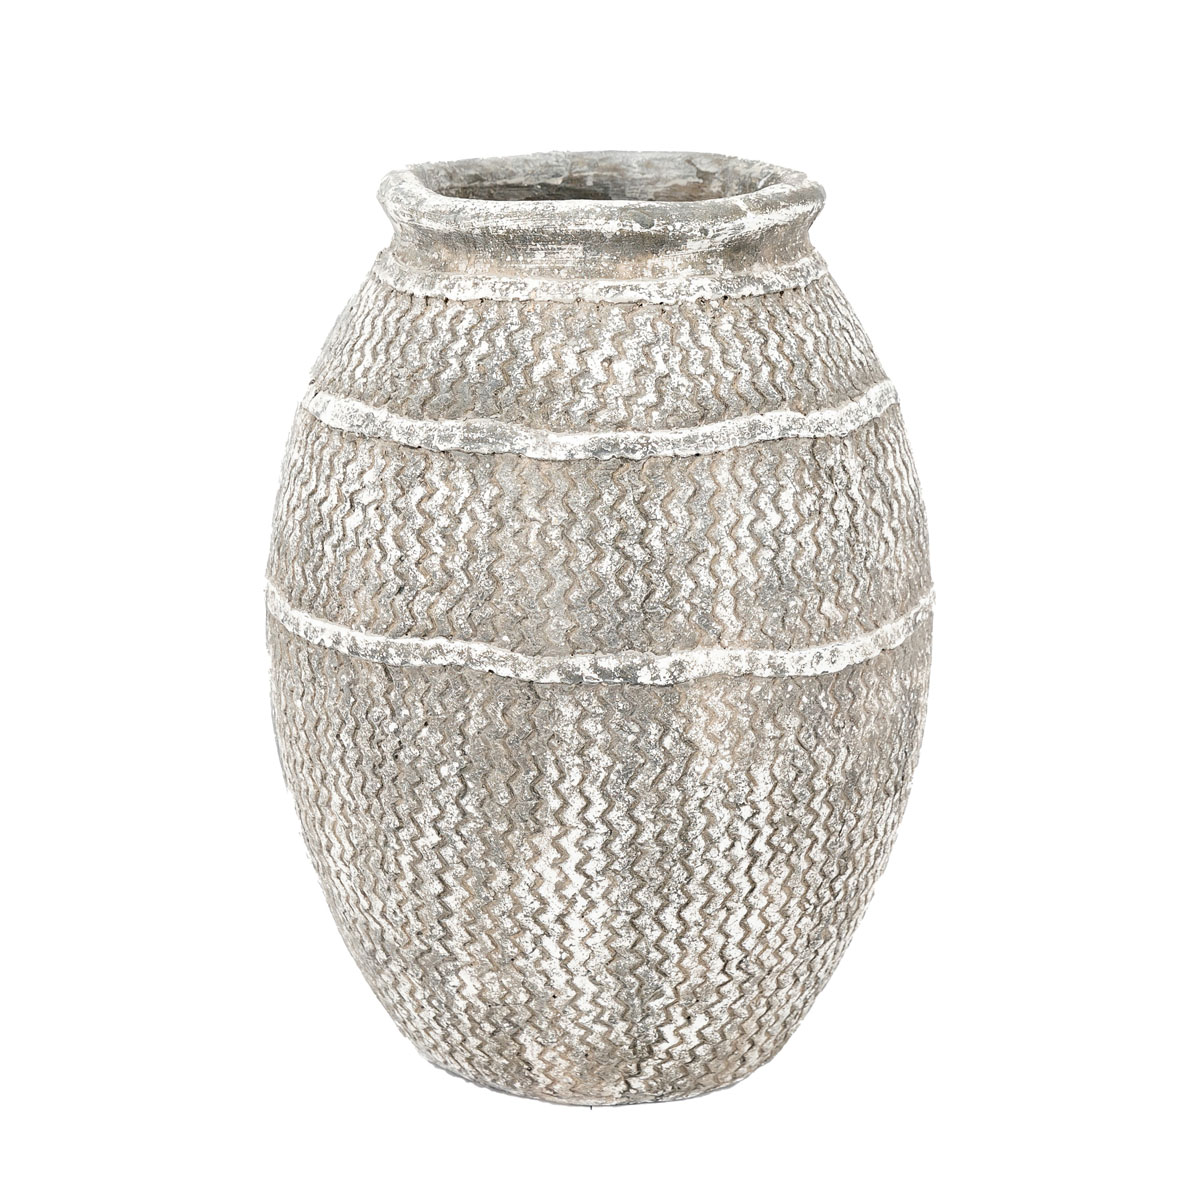 Zante Vase Small Antique Grey 300x300x395mm